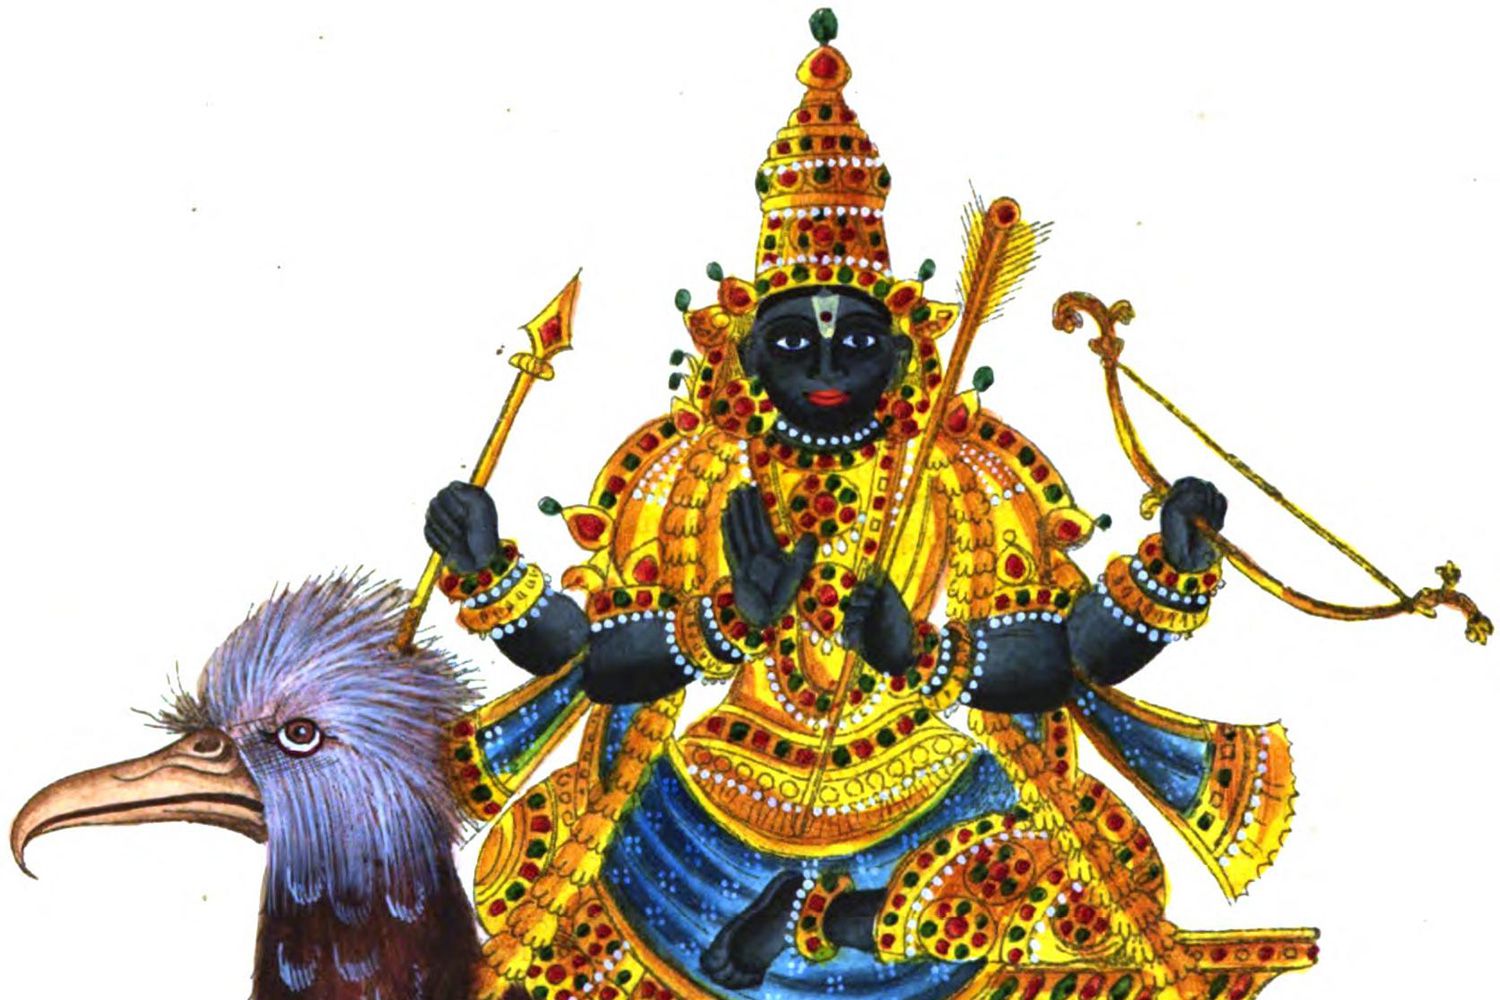 Aprenda sobre la deidad hindú Shani Dev y cómo la oración evita el mal